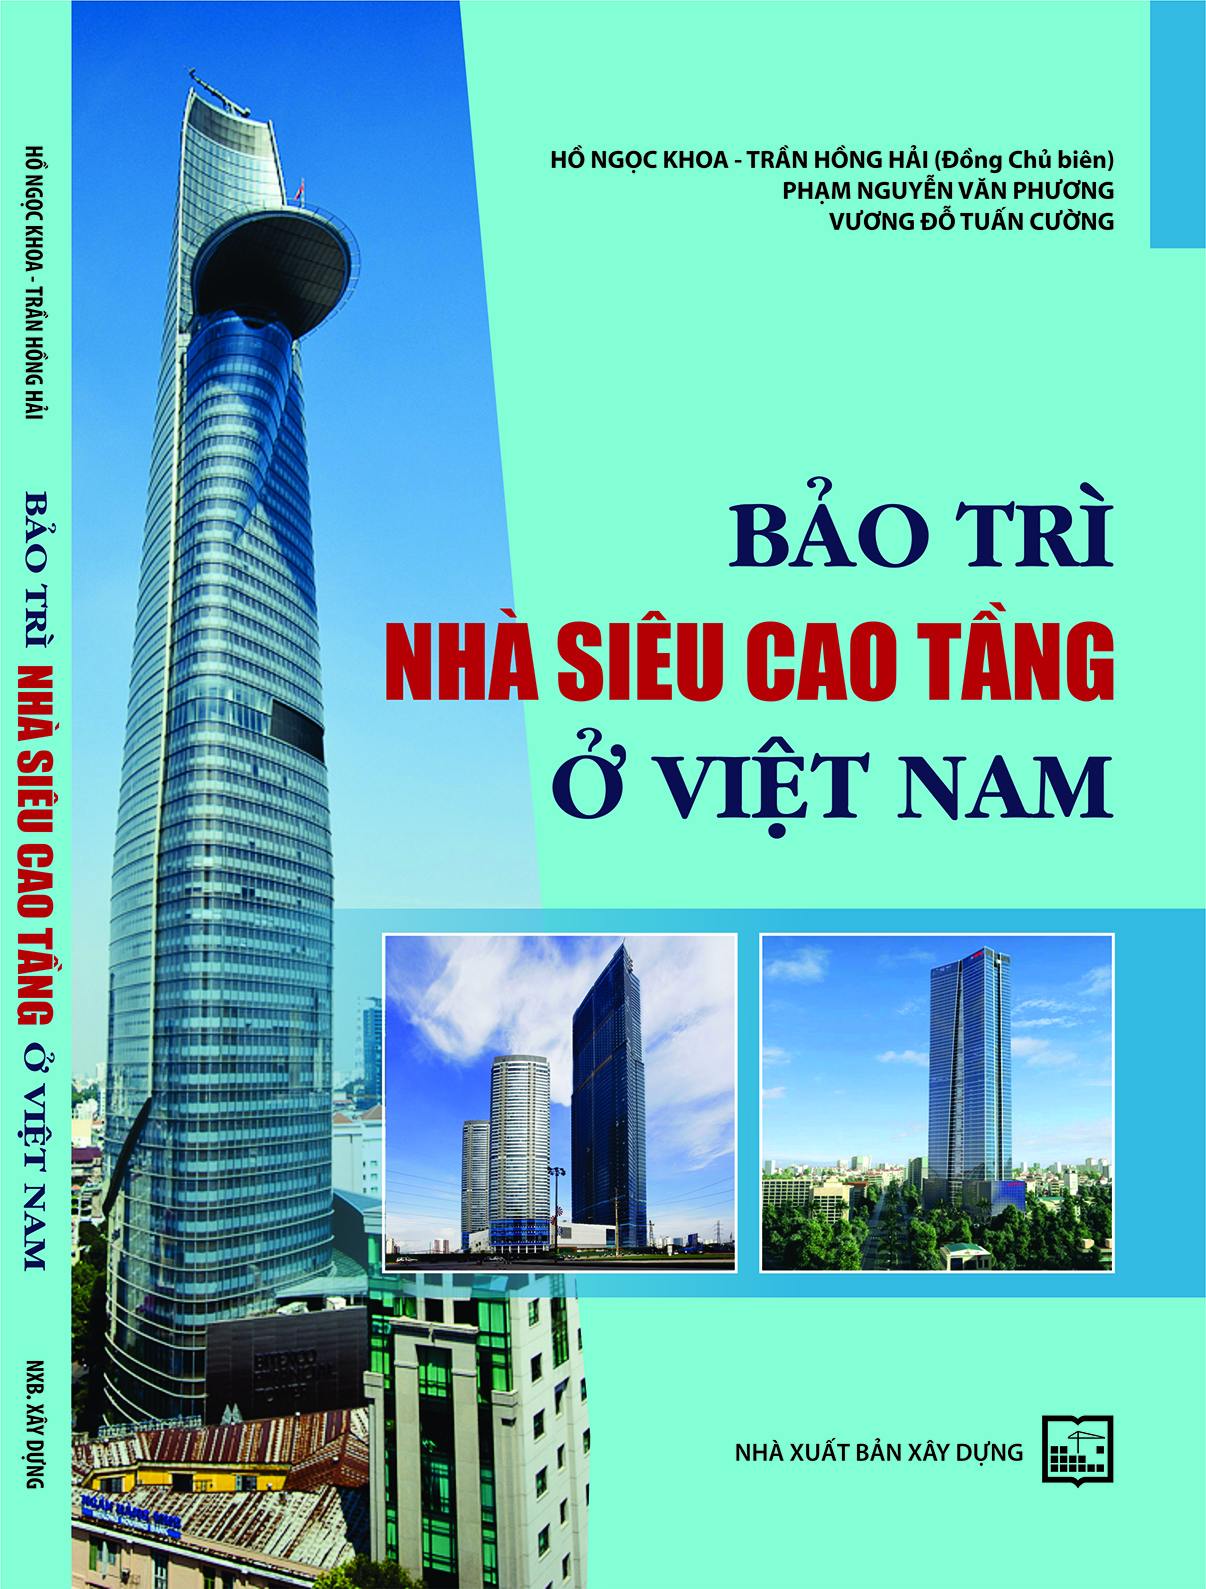 Bảo trì nhà siêu cao tầng ở Việt Nam